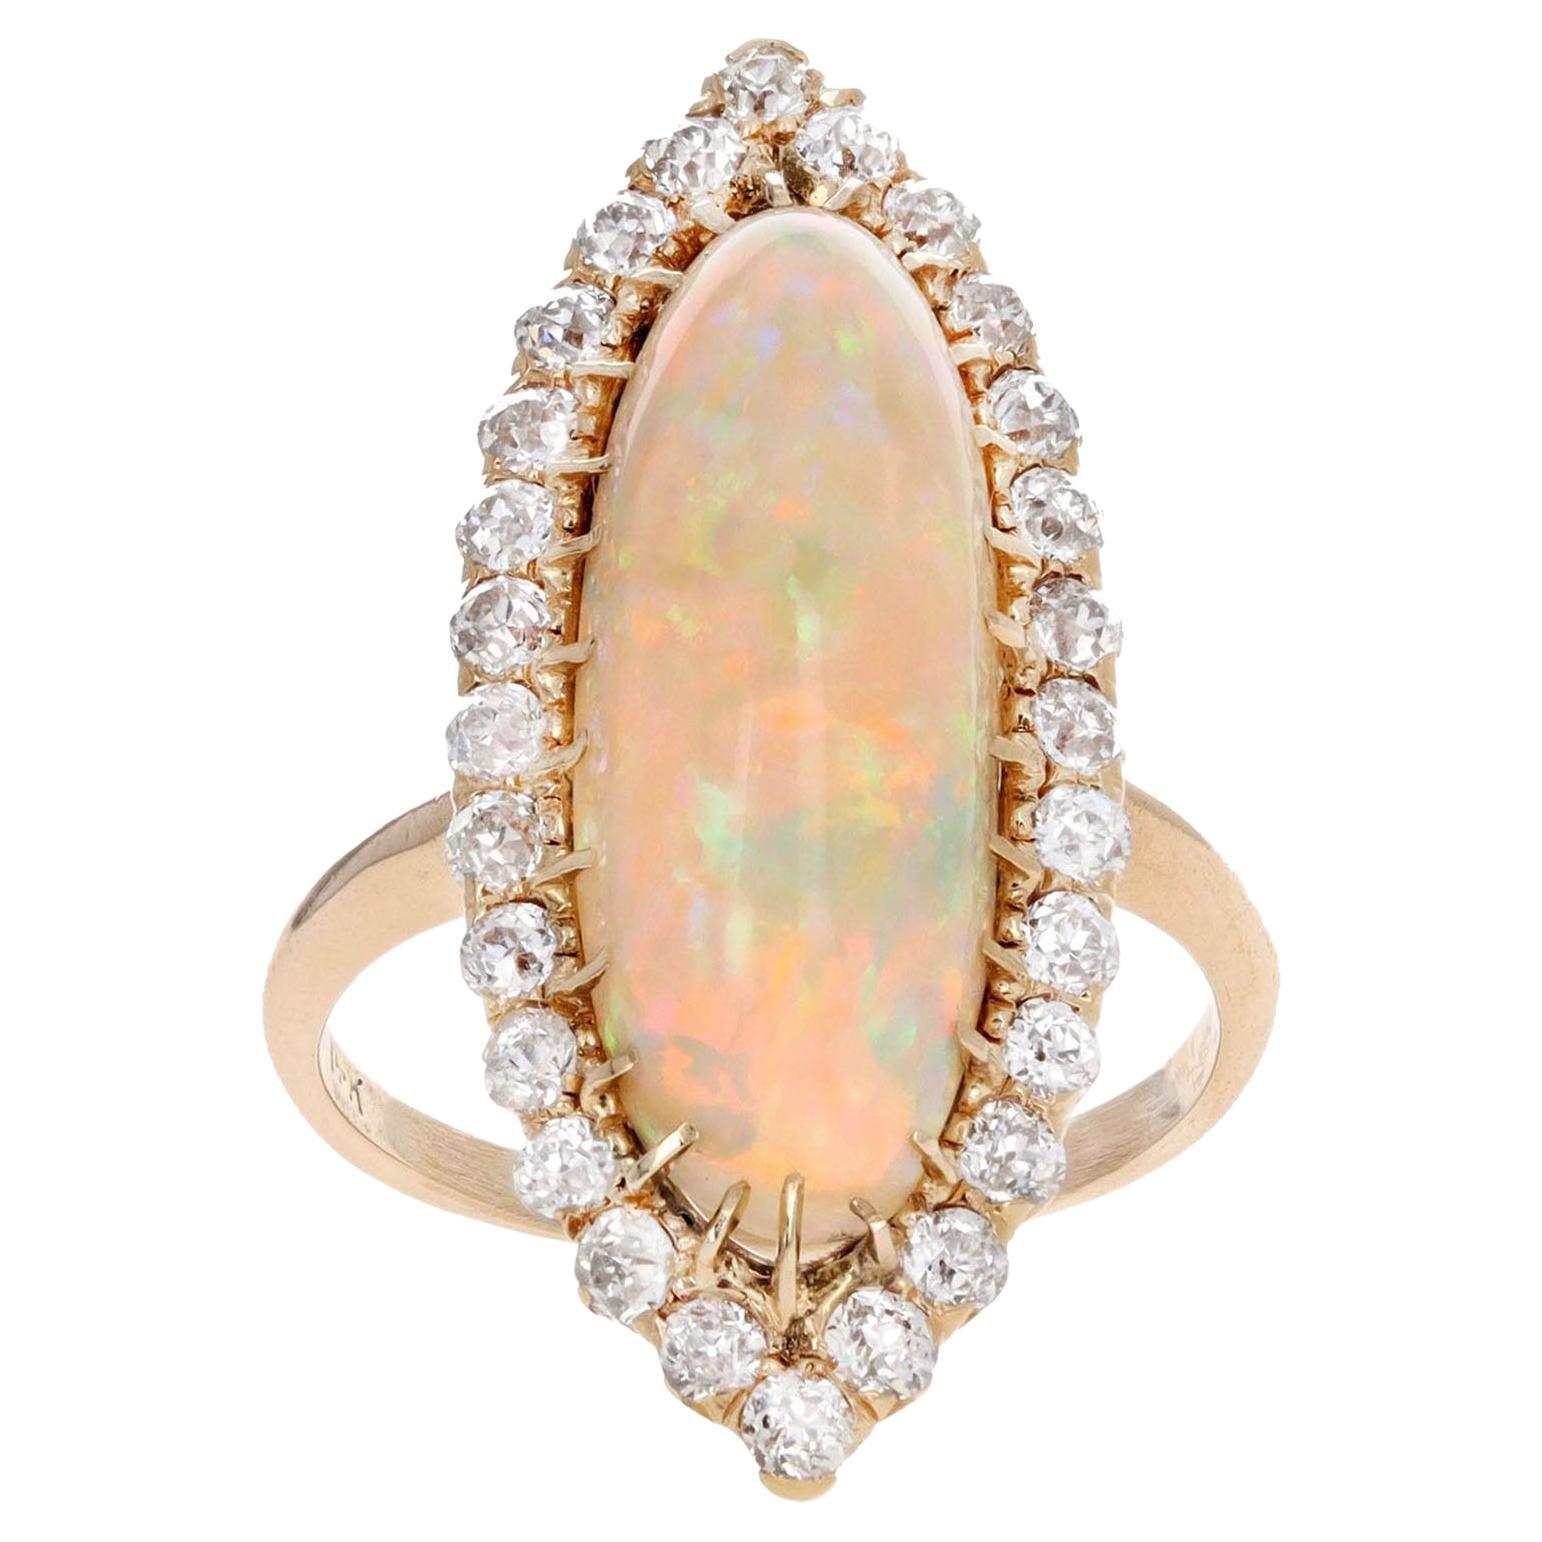 Viktorianischer Halo-Ring, 14 Karat Gelbgold, 5 Karat äthiopischer Opal, alter europäischer Diamant